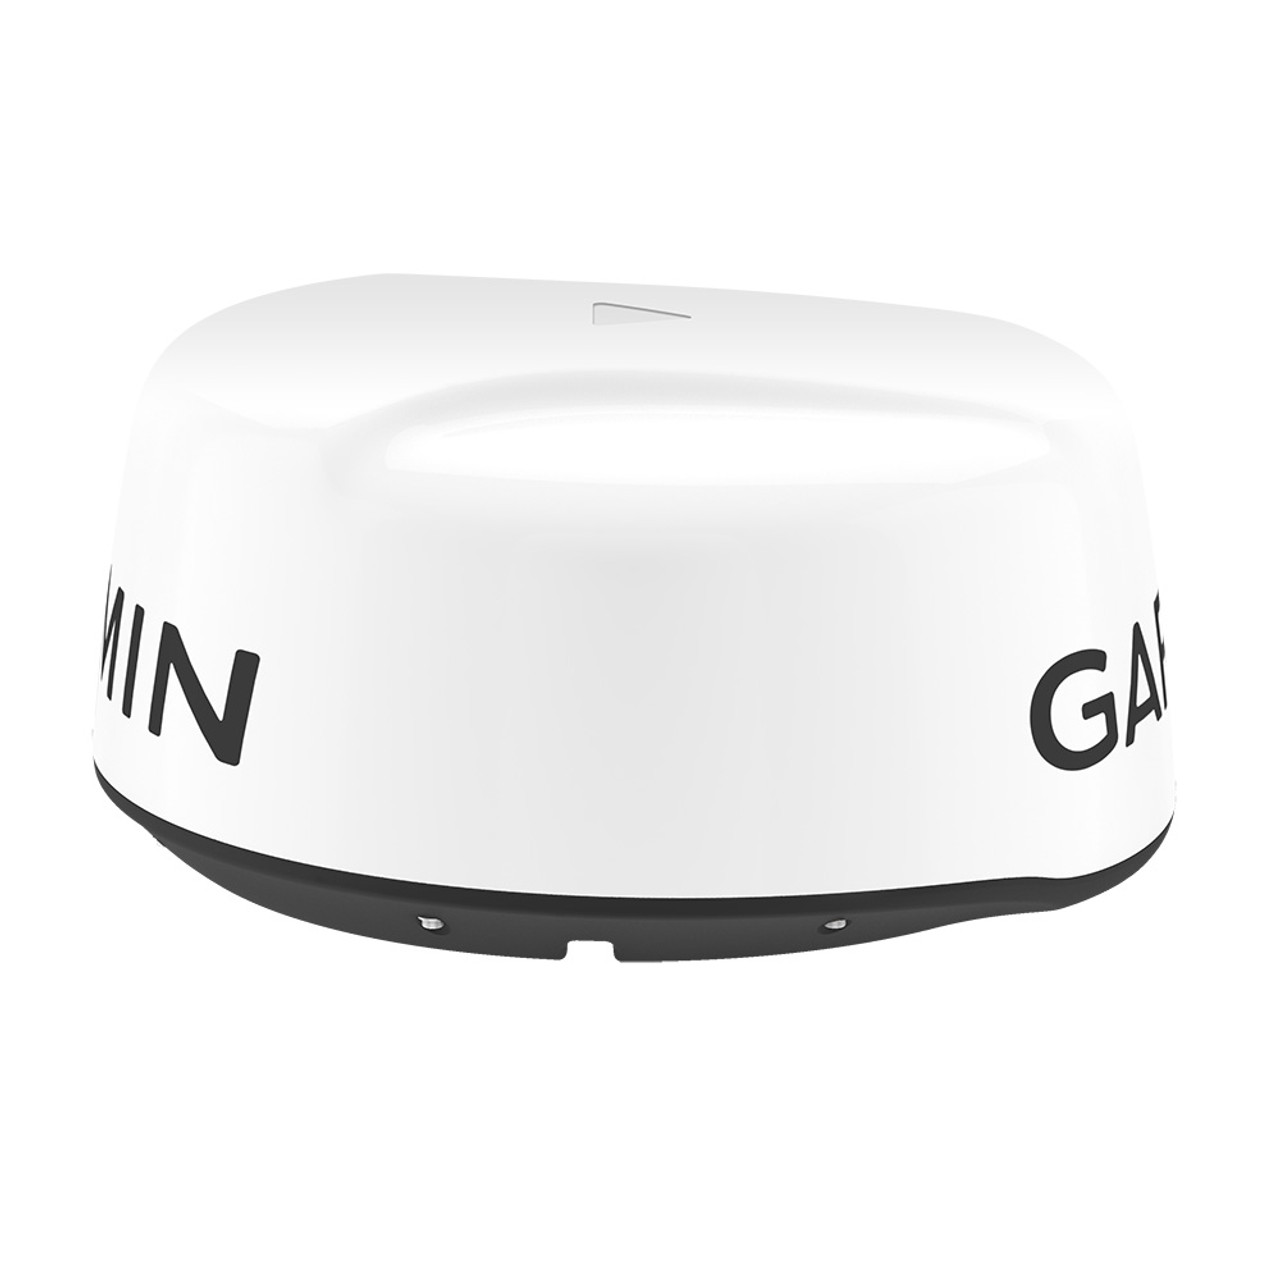 Garmin GMR™ 18 xHD3 Radar